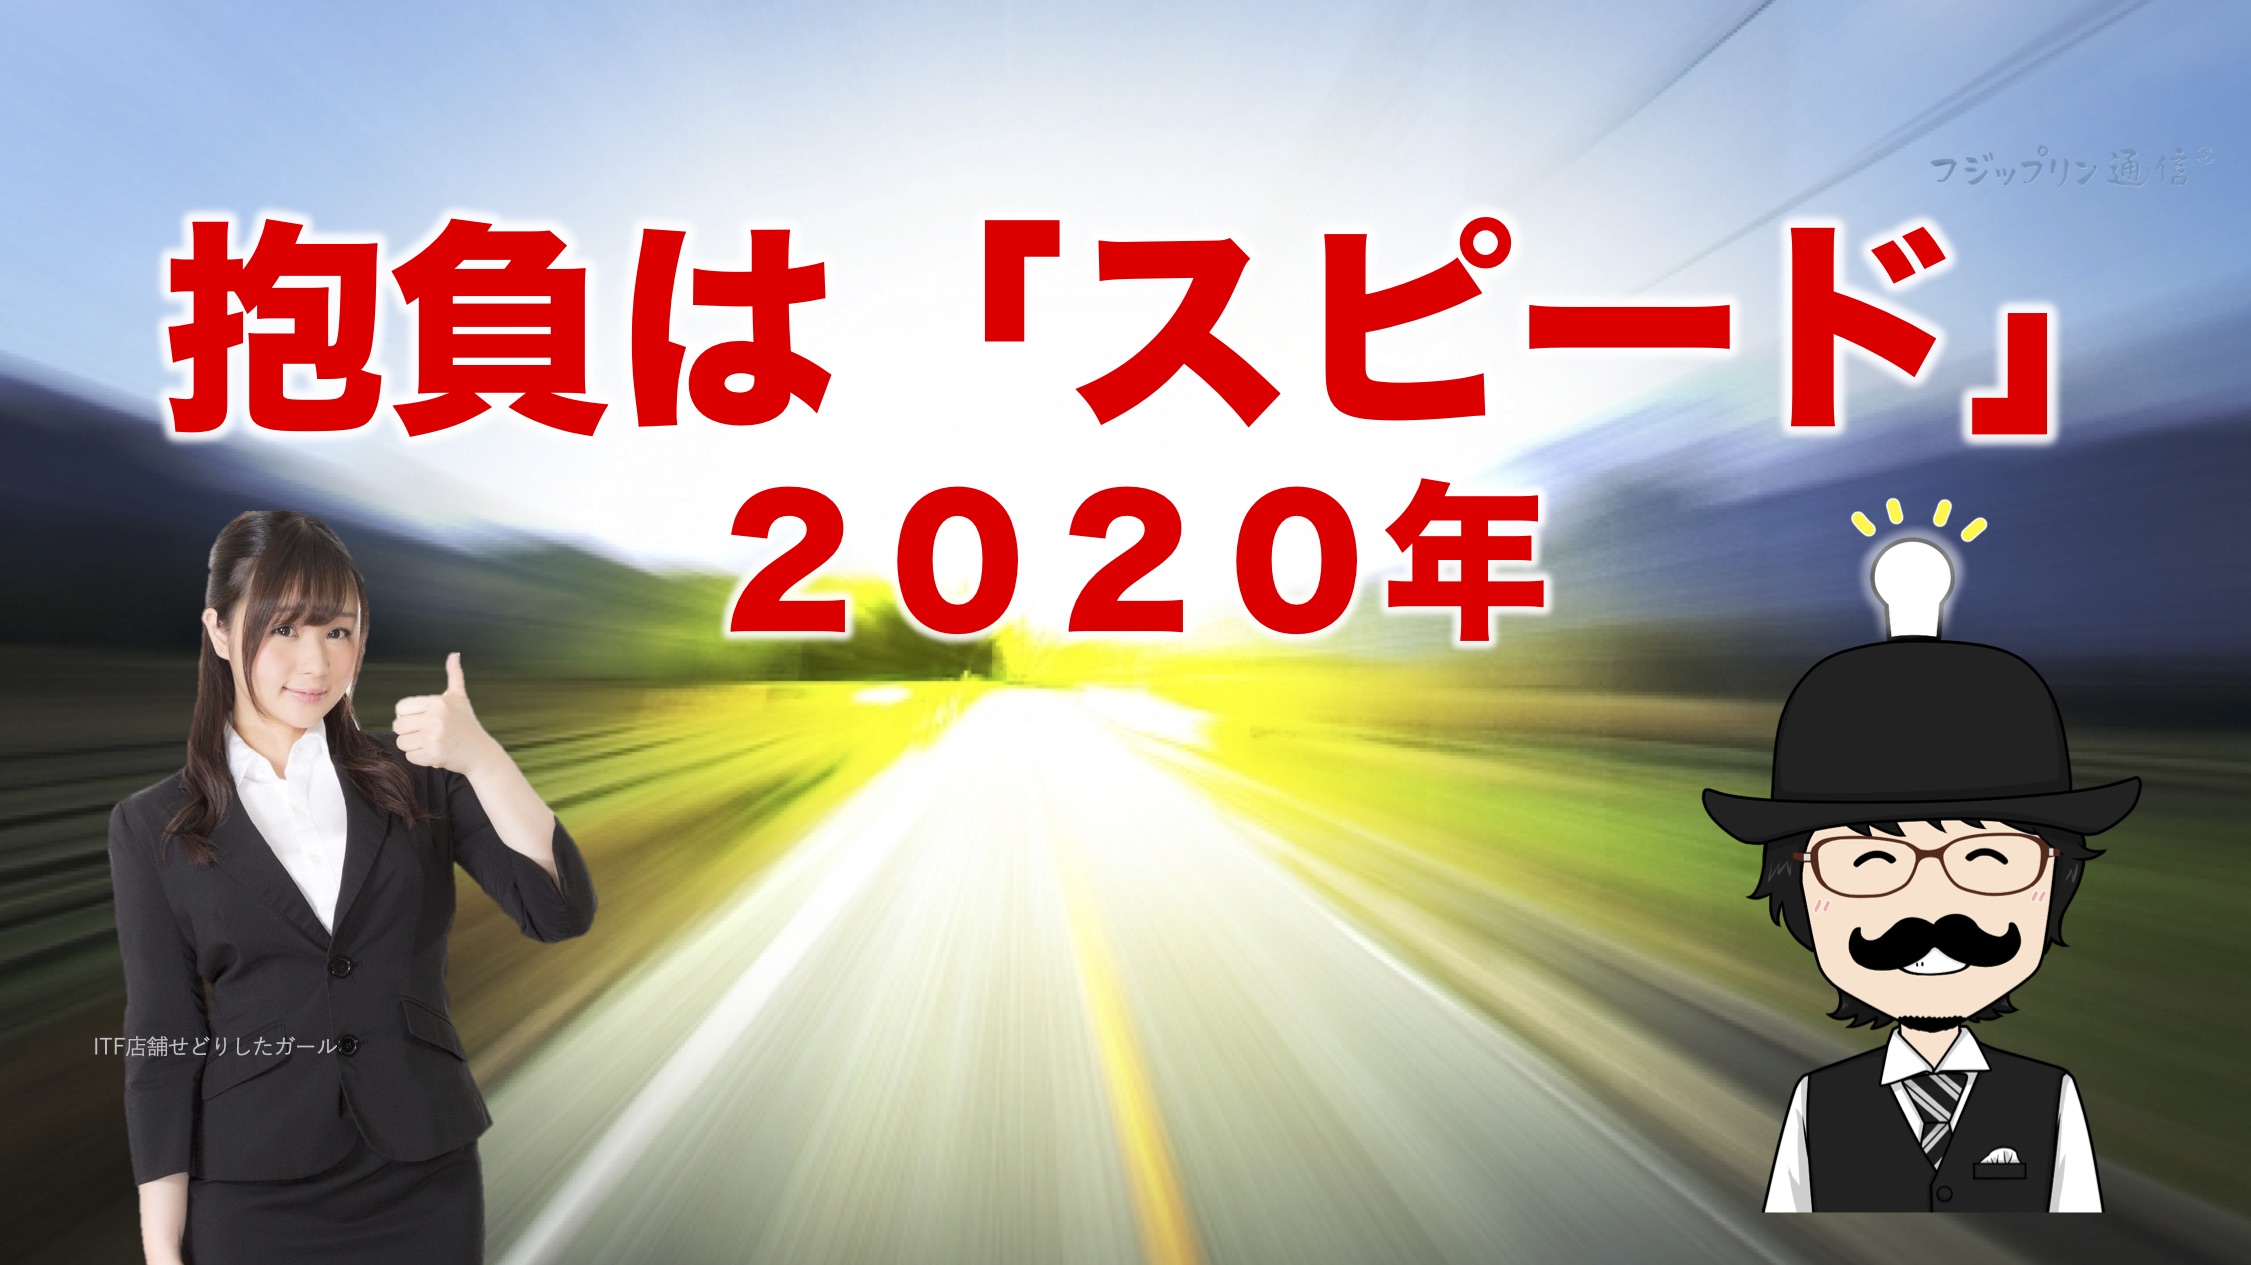 2020年の抱負は「スピード」に決定です！